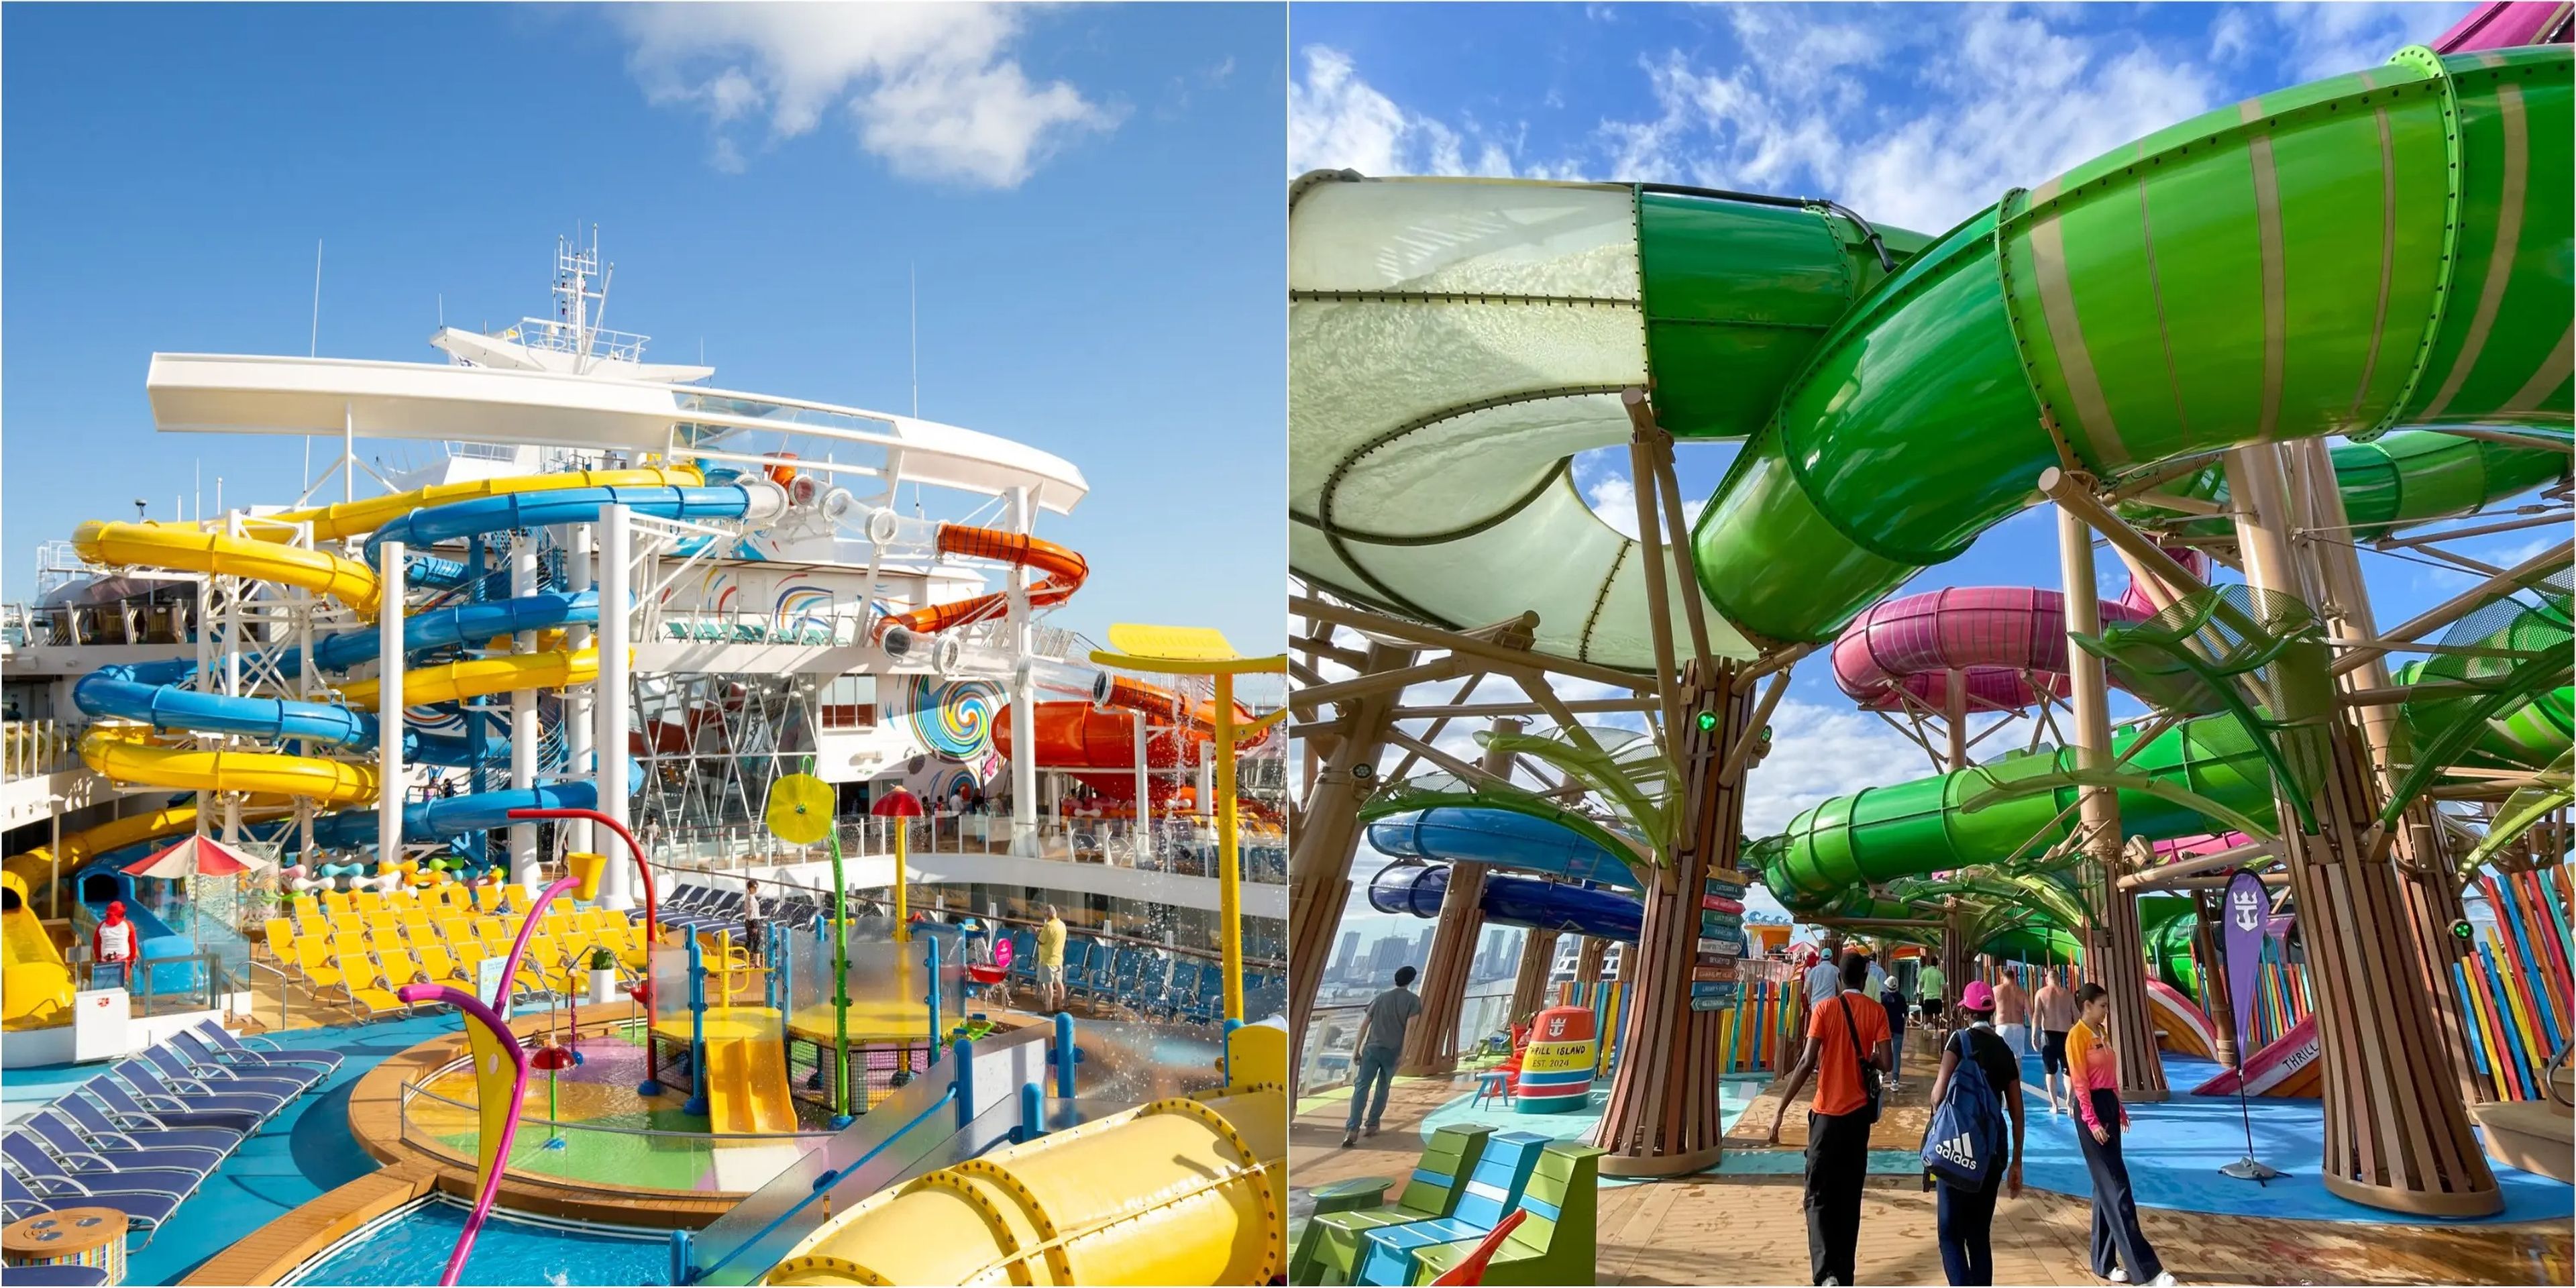 Parque acuático infantil y toboganes del Wonder of the Seas (izquierda) y parque acuático del Icon of the Seas (derecha).